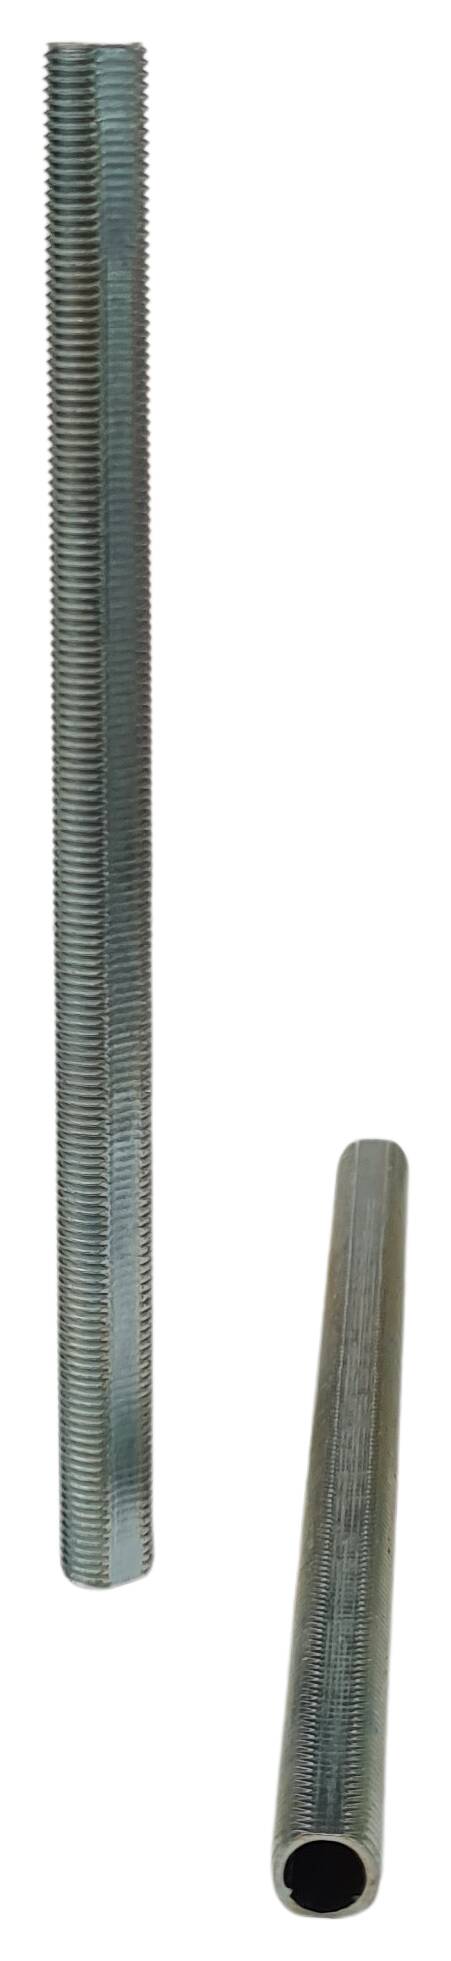 iron thread tube M10x1x140 profil zinc